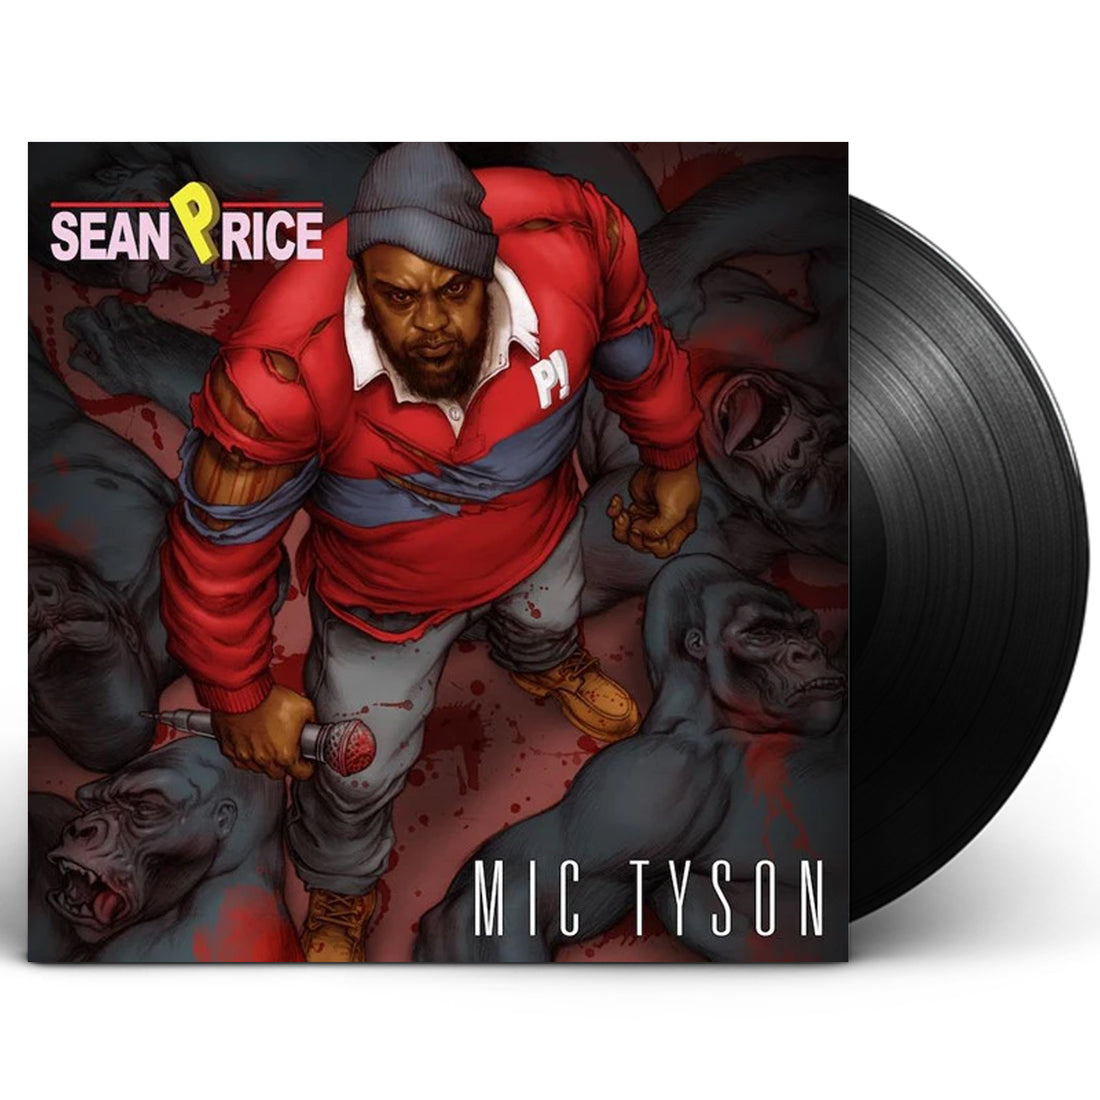 Sean Price "Mic Tyson" 2xLP Vinyl